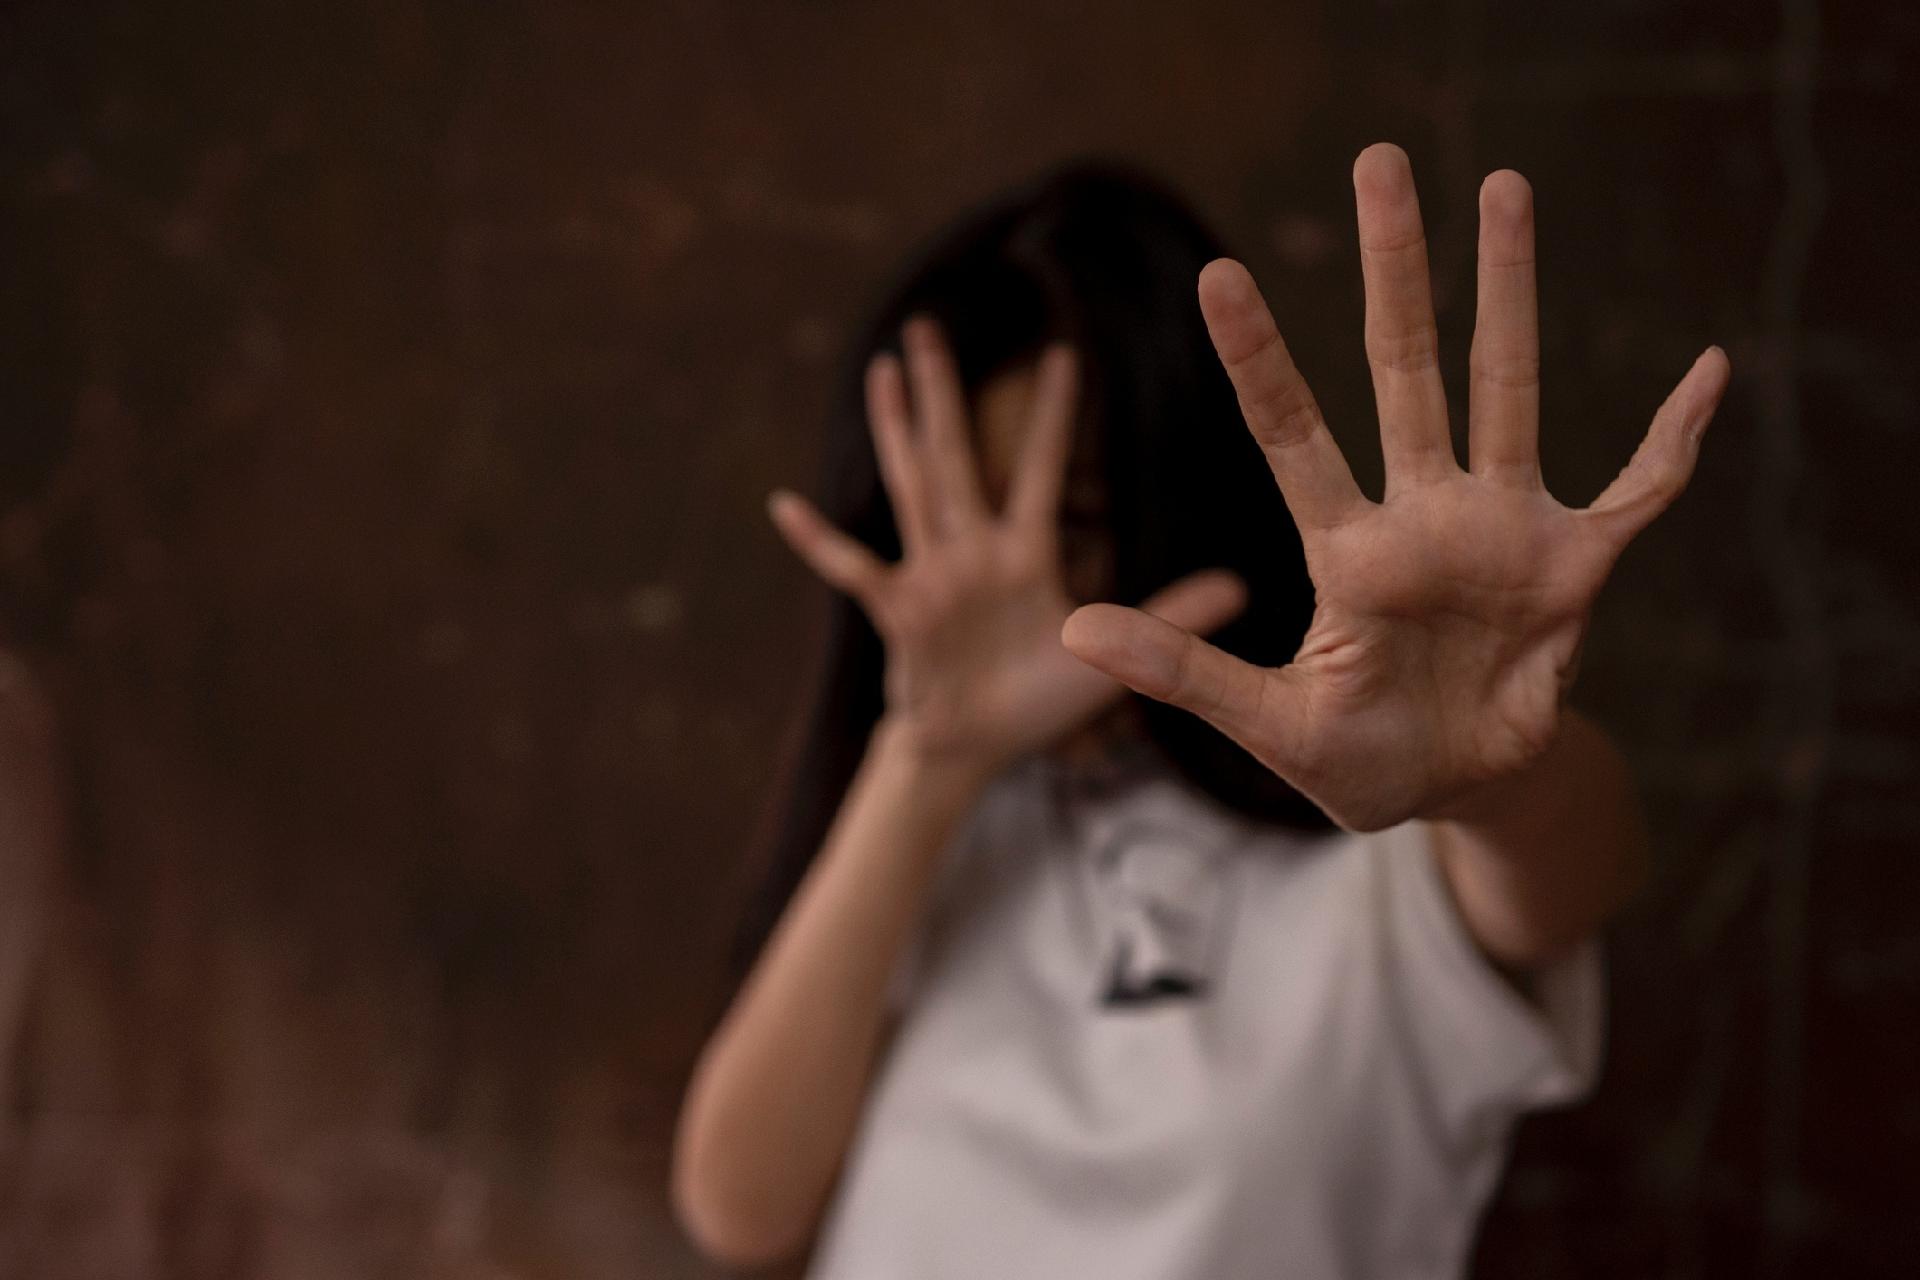 Luto e dor invisíveis: como o estupro afeta a saúde mental das vítimas - 16/11/2020 - UOL VivaBem